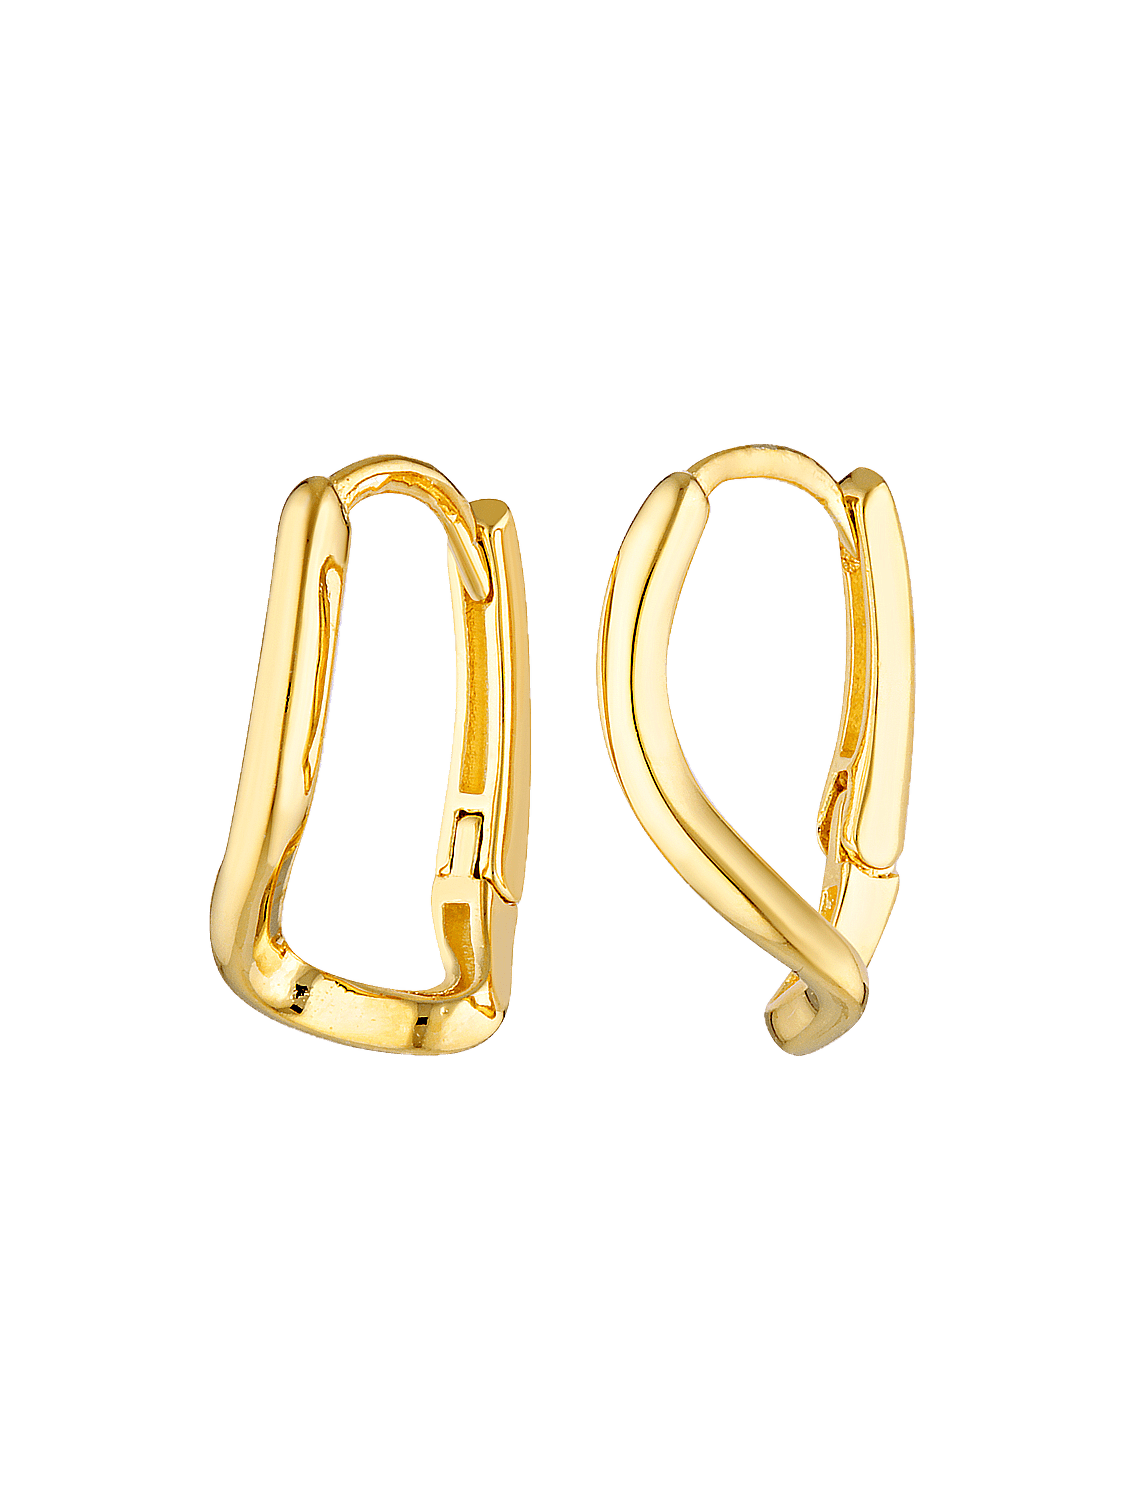 18k gold filled wavy earrings